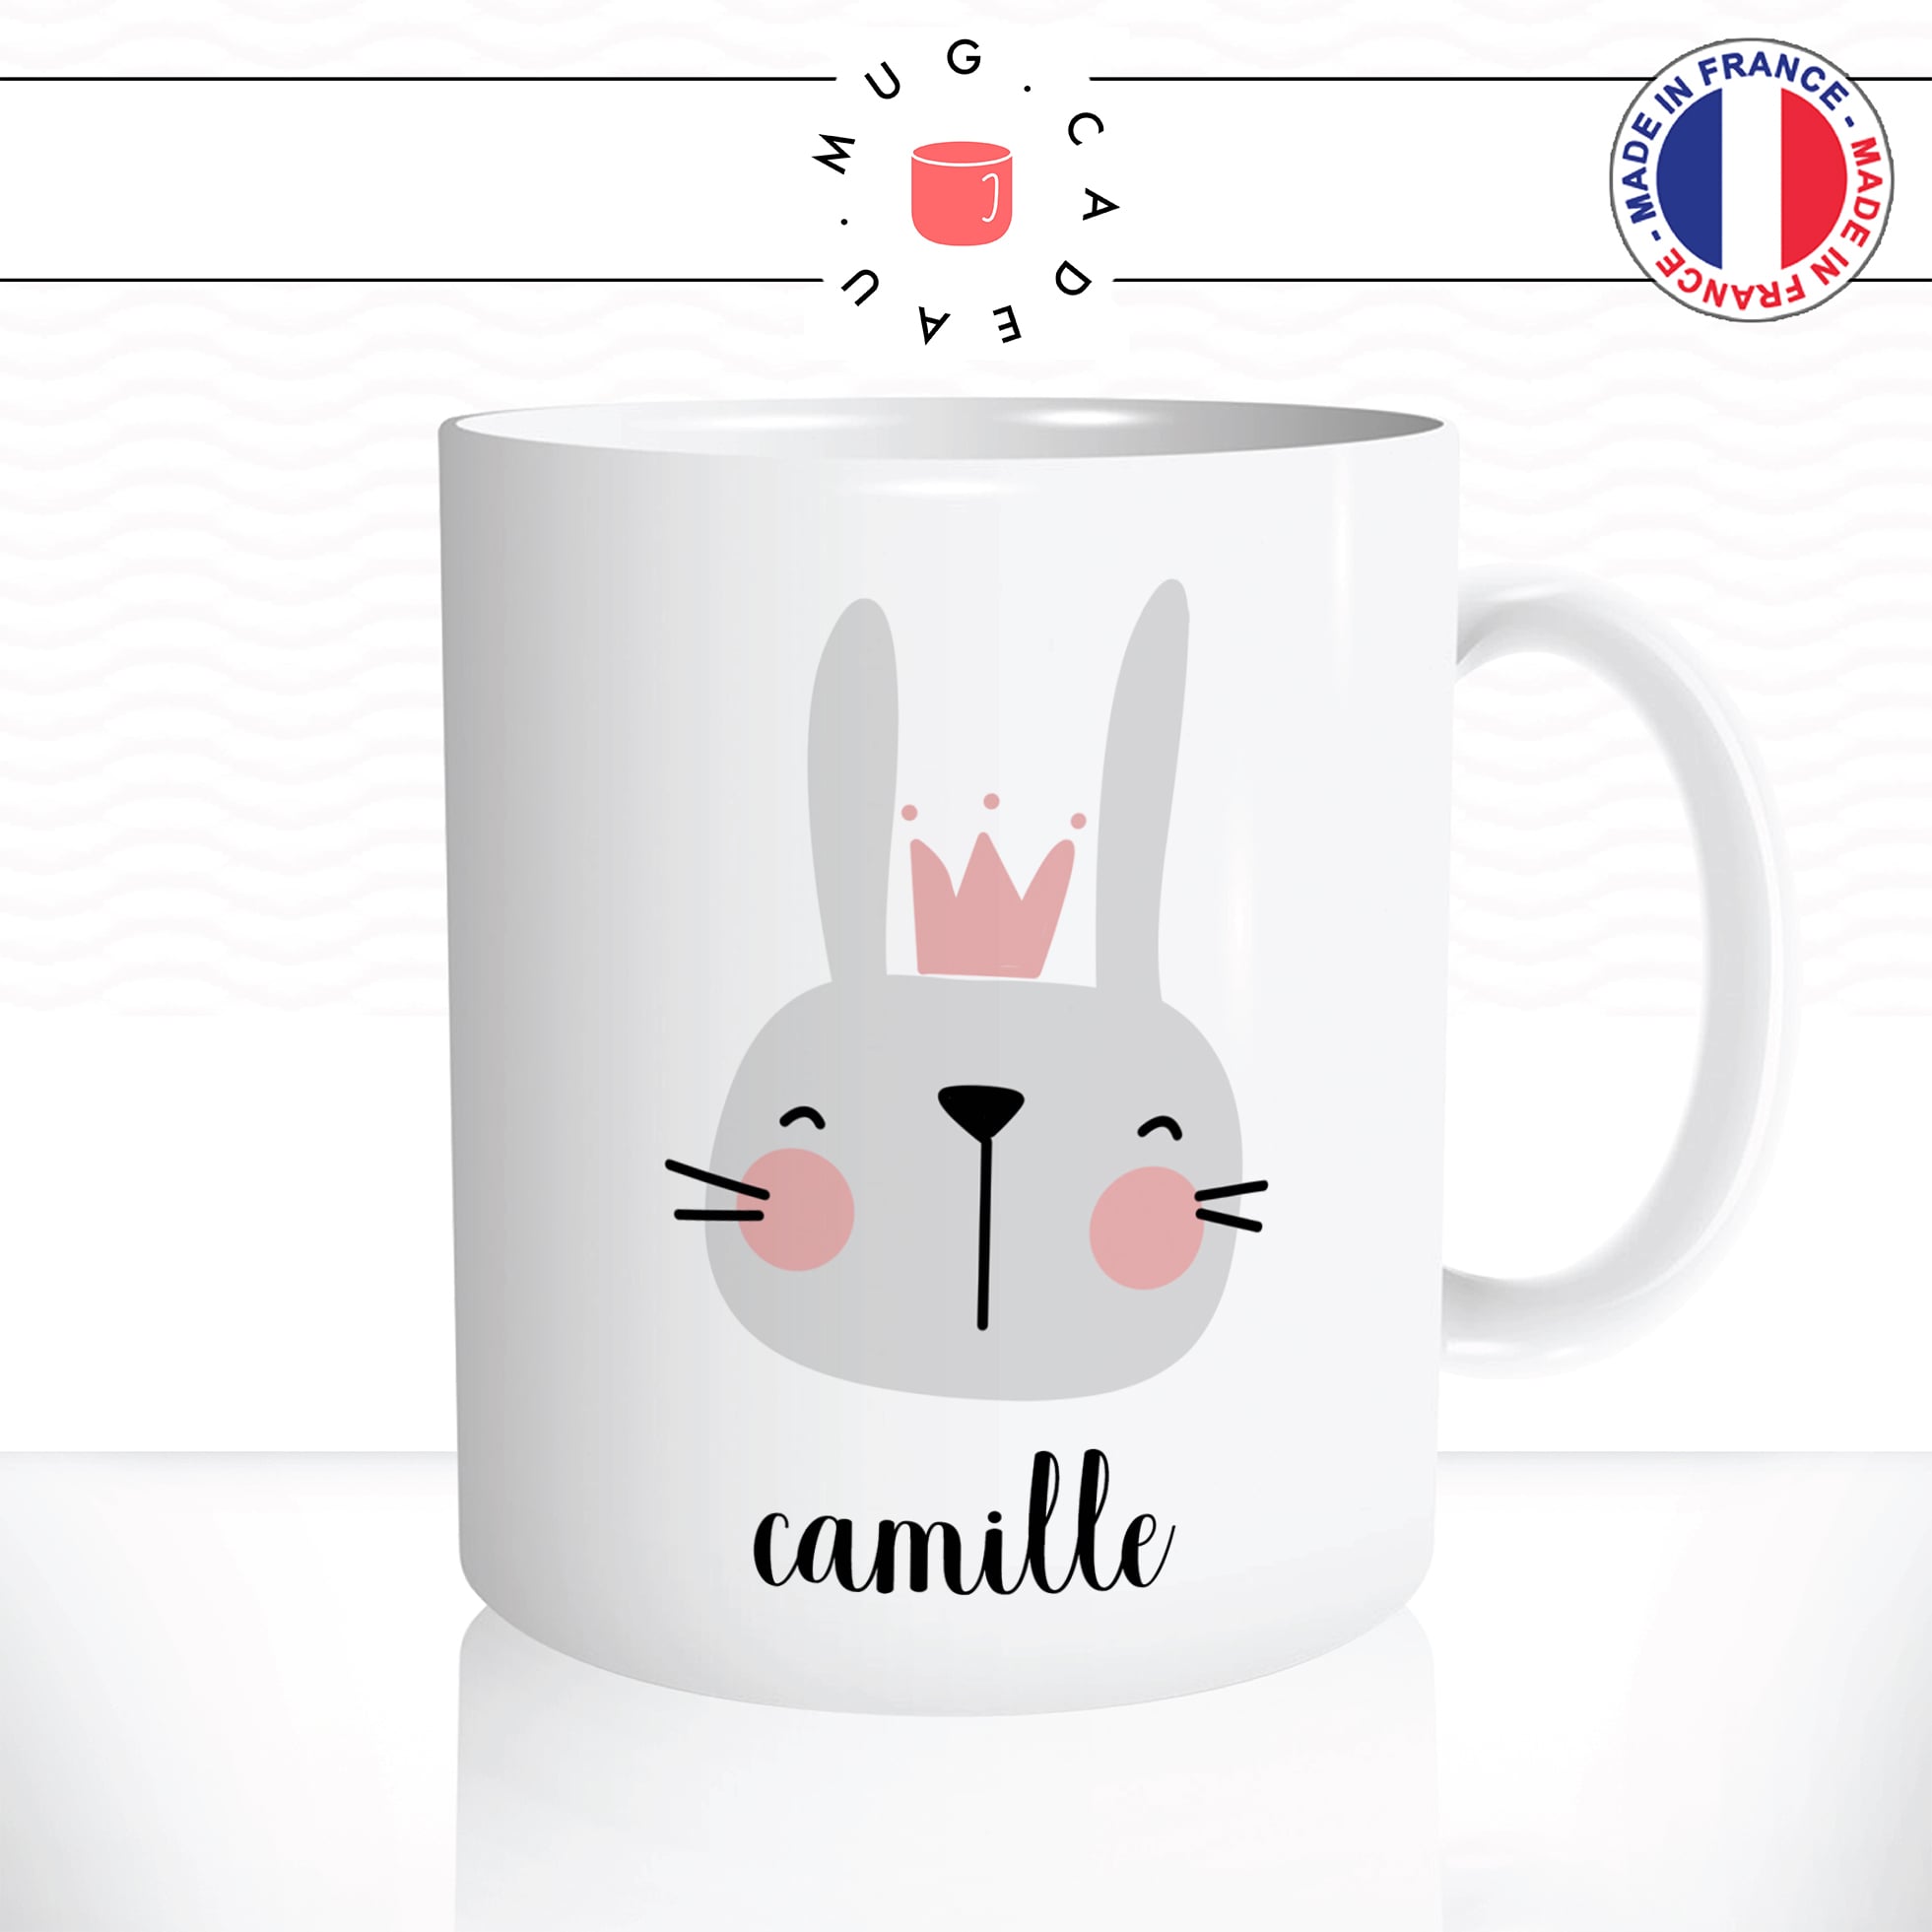 mug-tasse-lapin-rabbit-princesse-lapine-reine-gris-rose-enfant-couronne-café-thé-idée-cadeau-original-prenom-personnalisable2-min